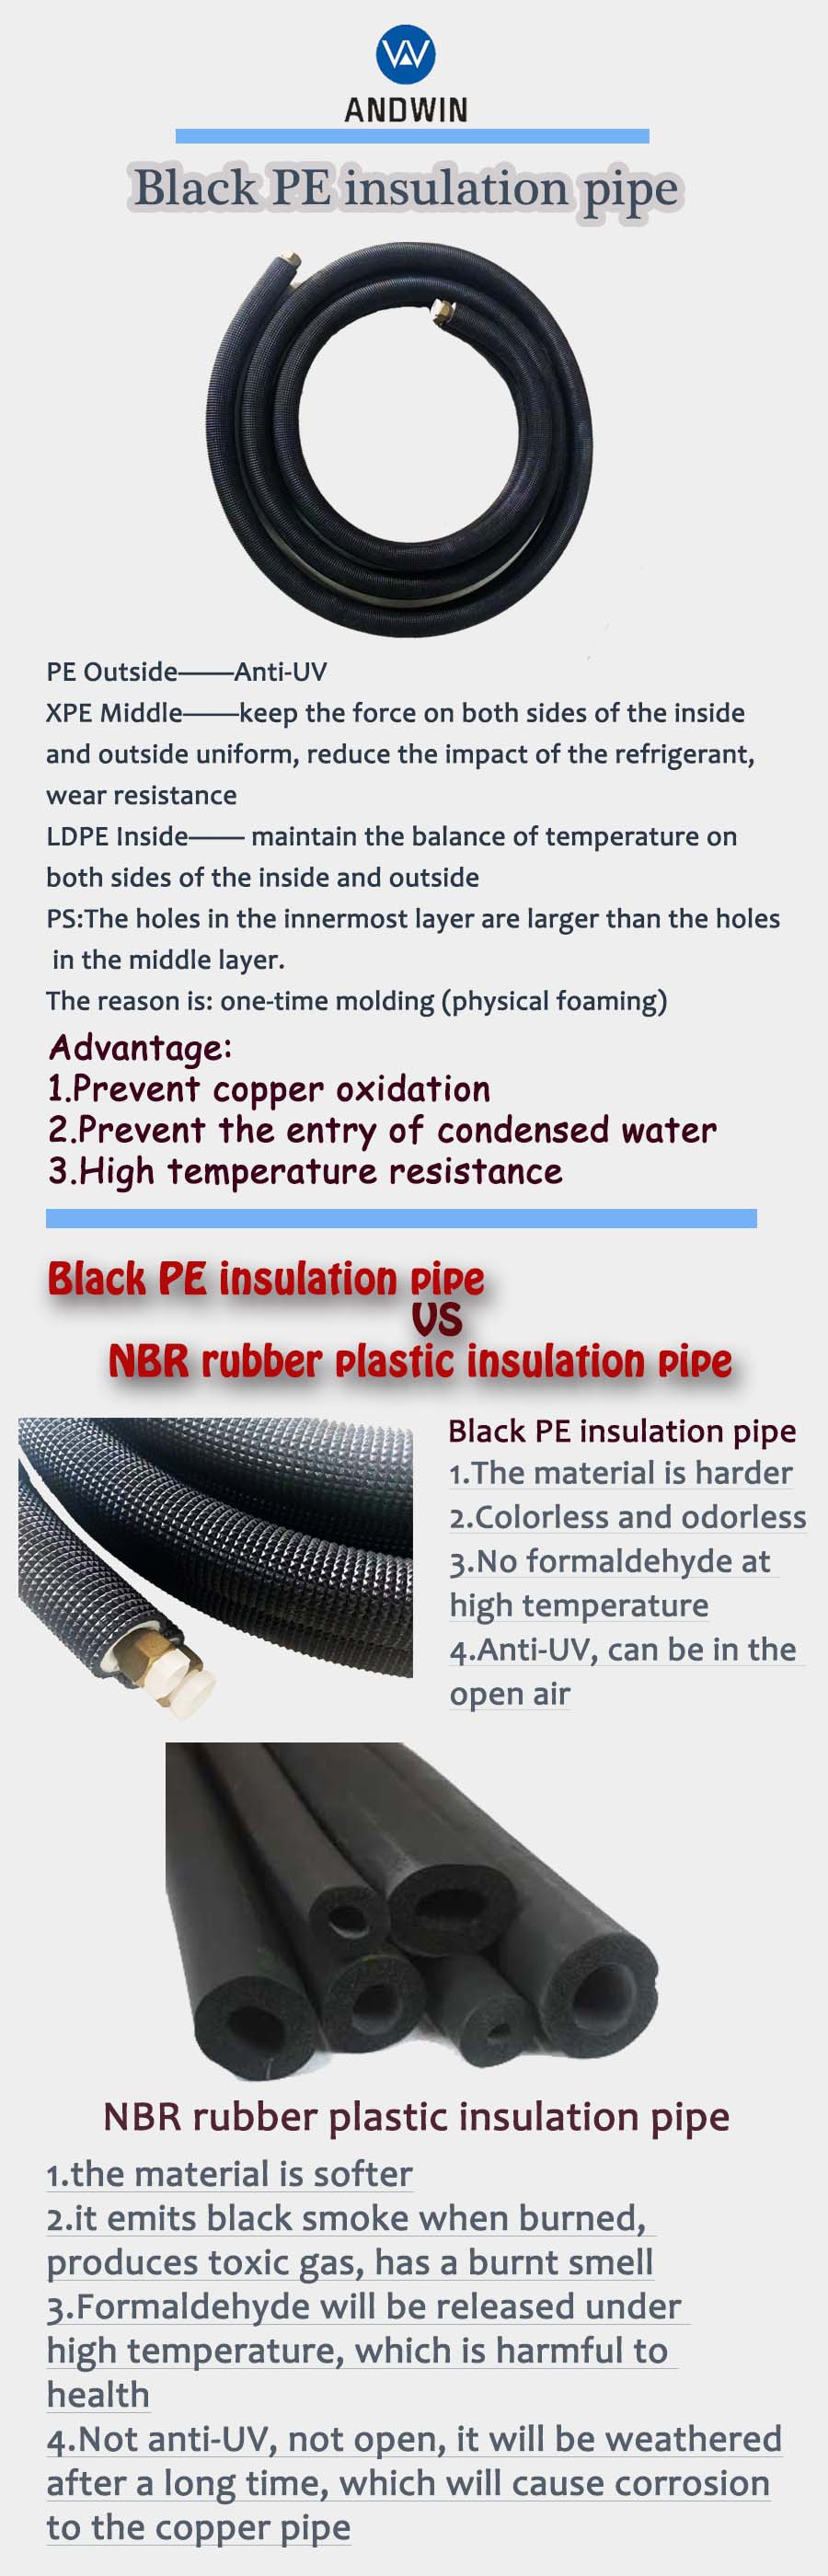 PE管和橡塑管对比.jpg